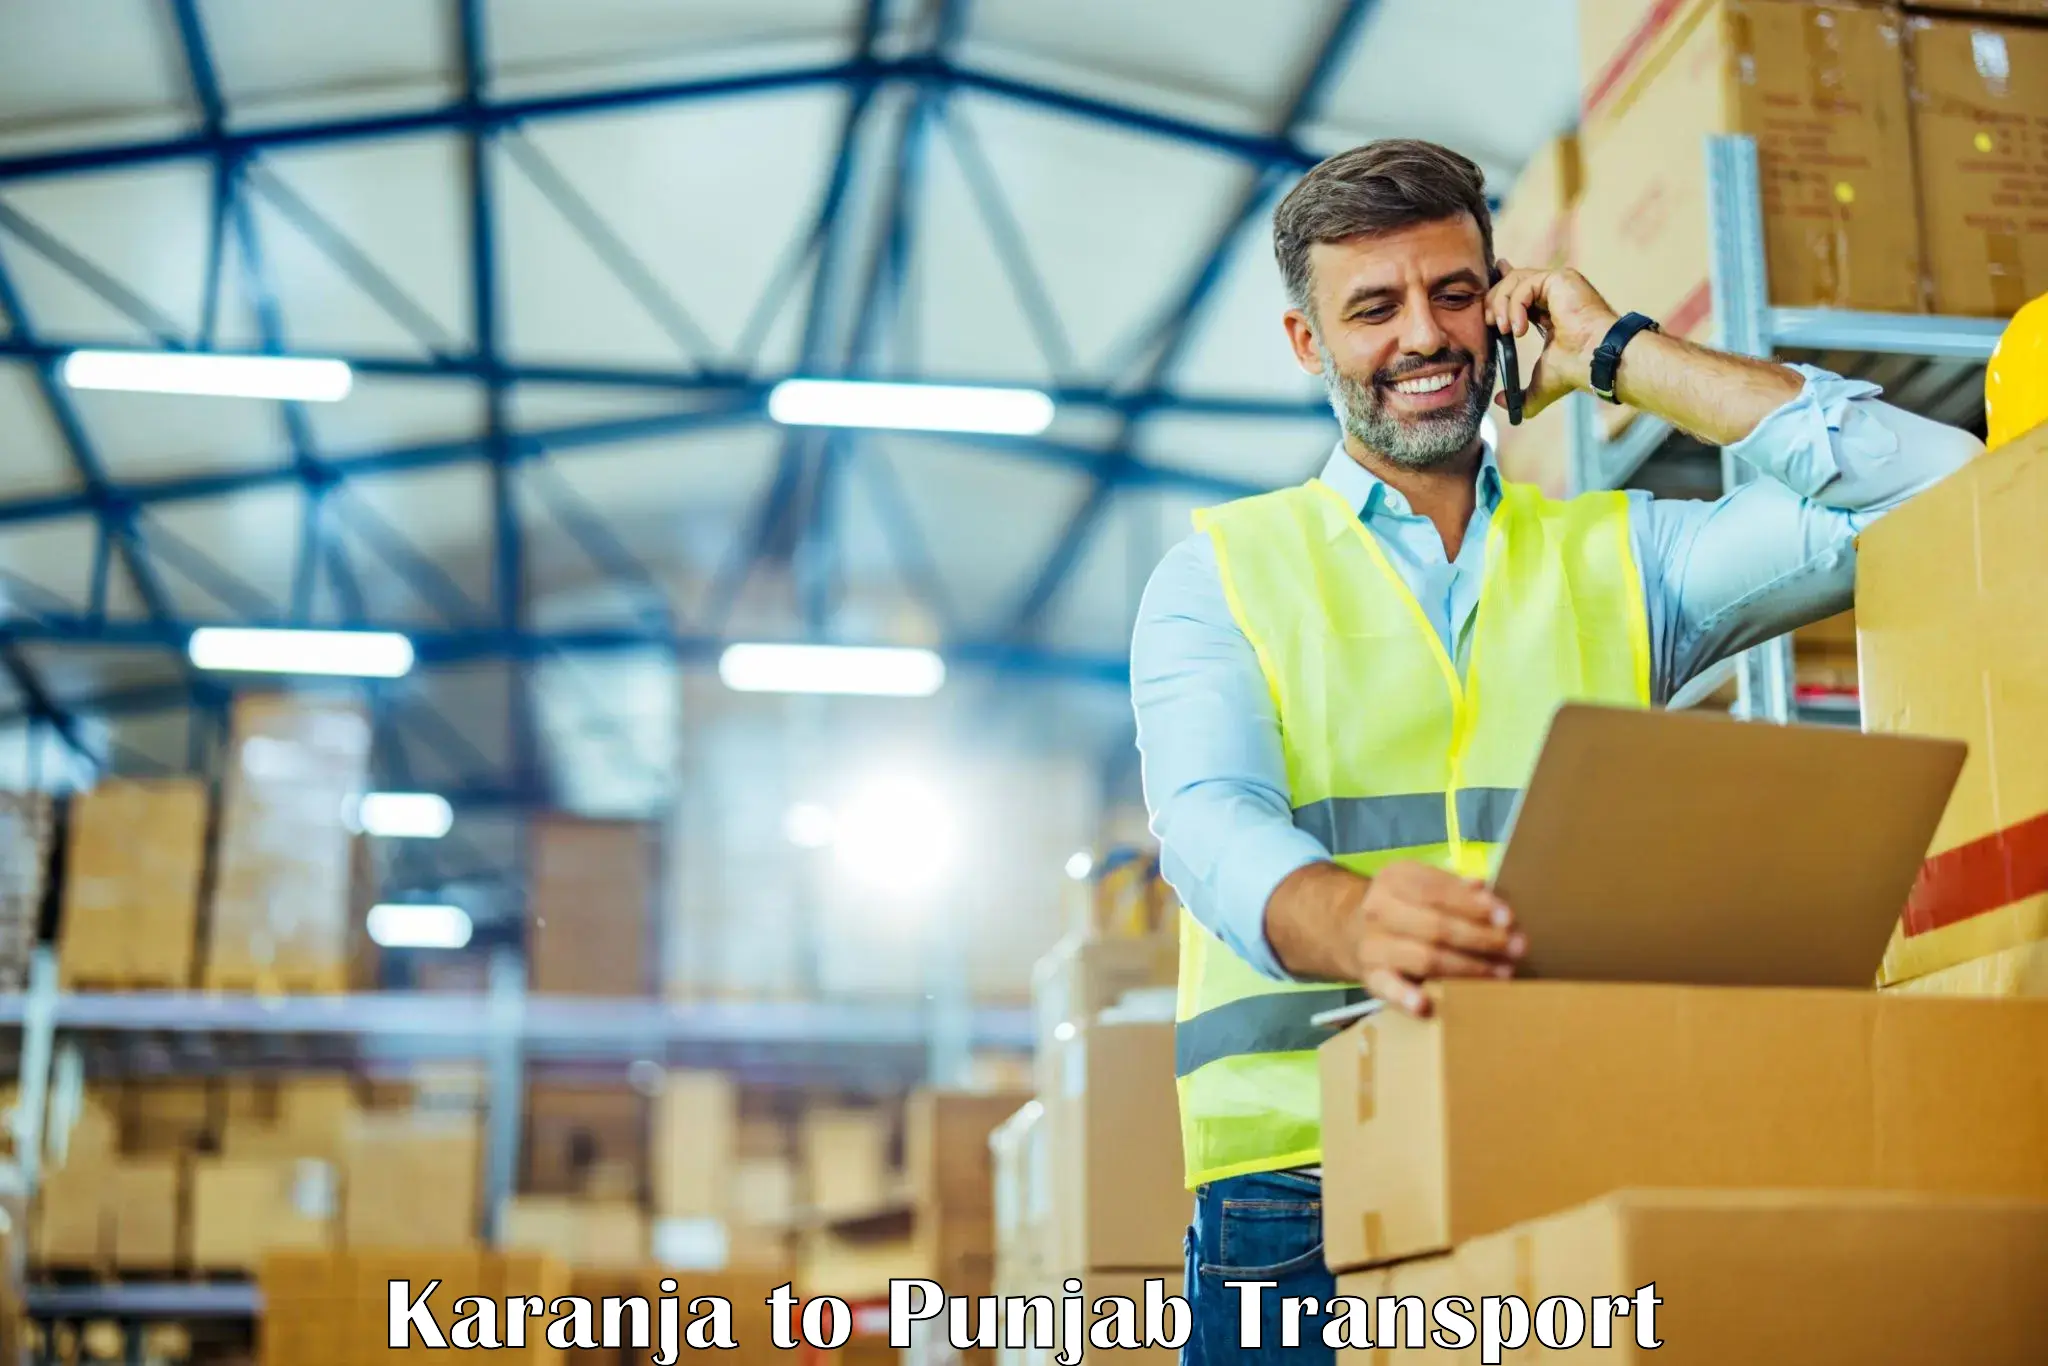 Delivery service Karanja to Punjab